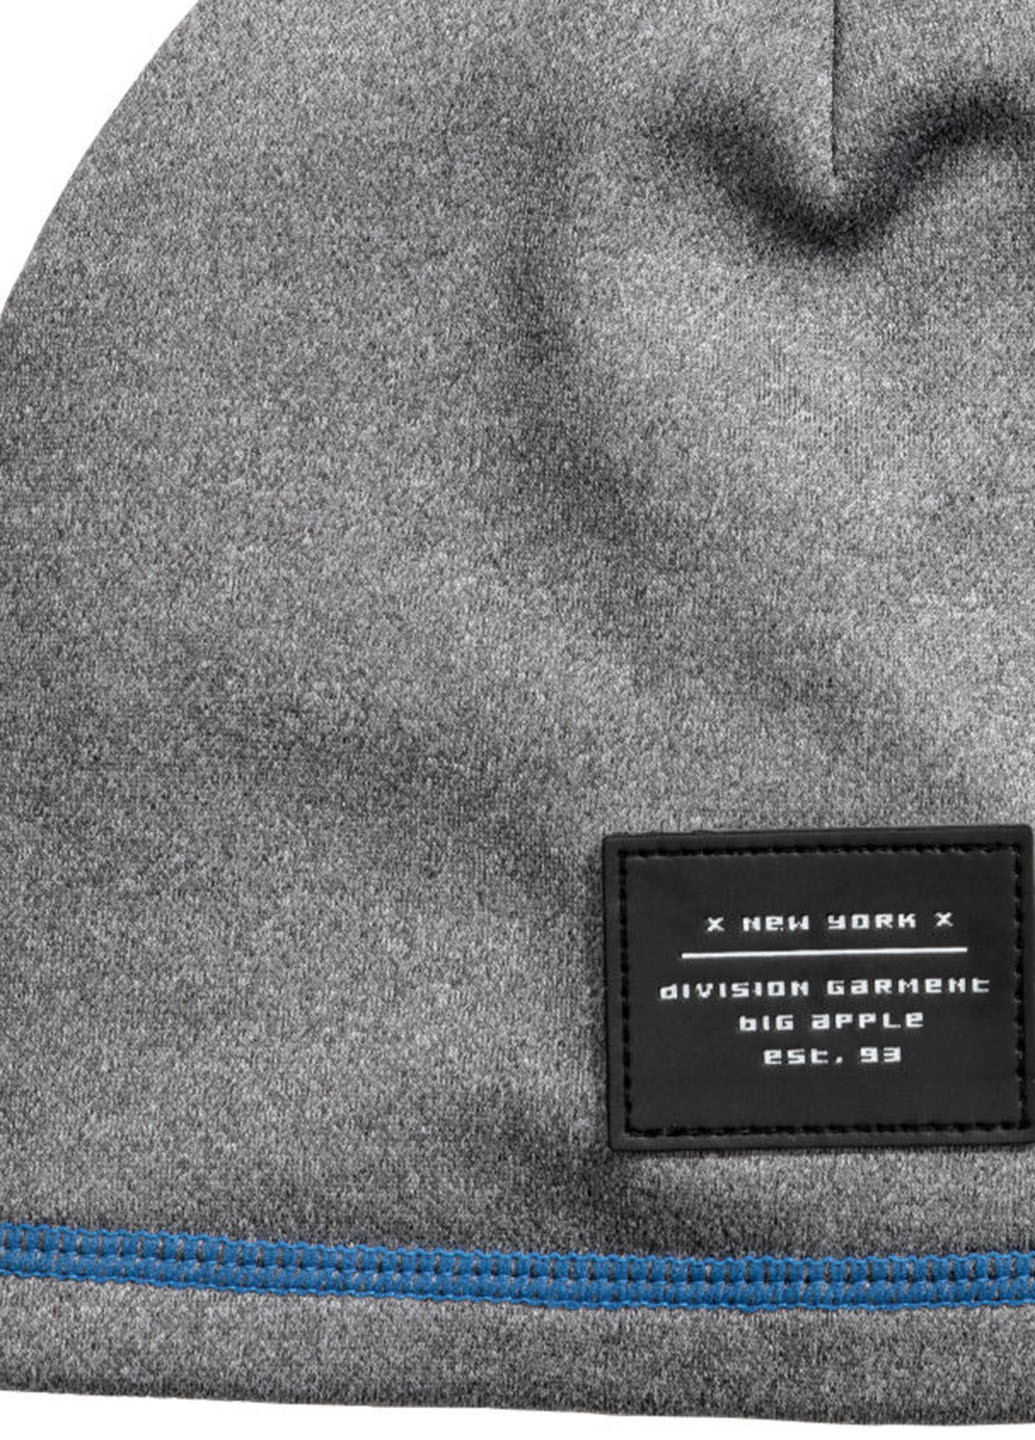 Шапка H&M бини логотип серая спортивная полиэстер